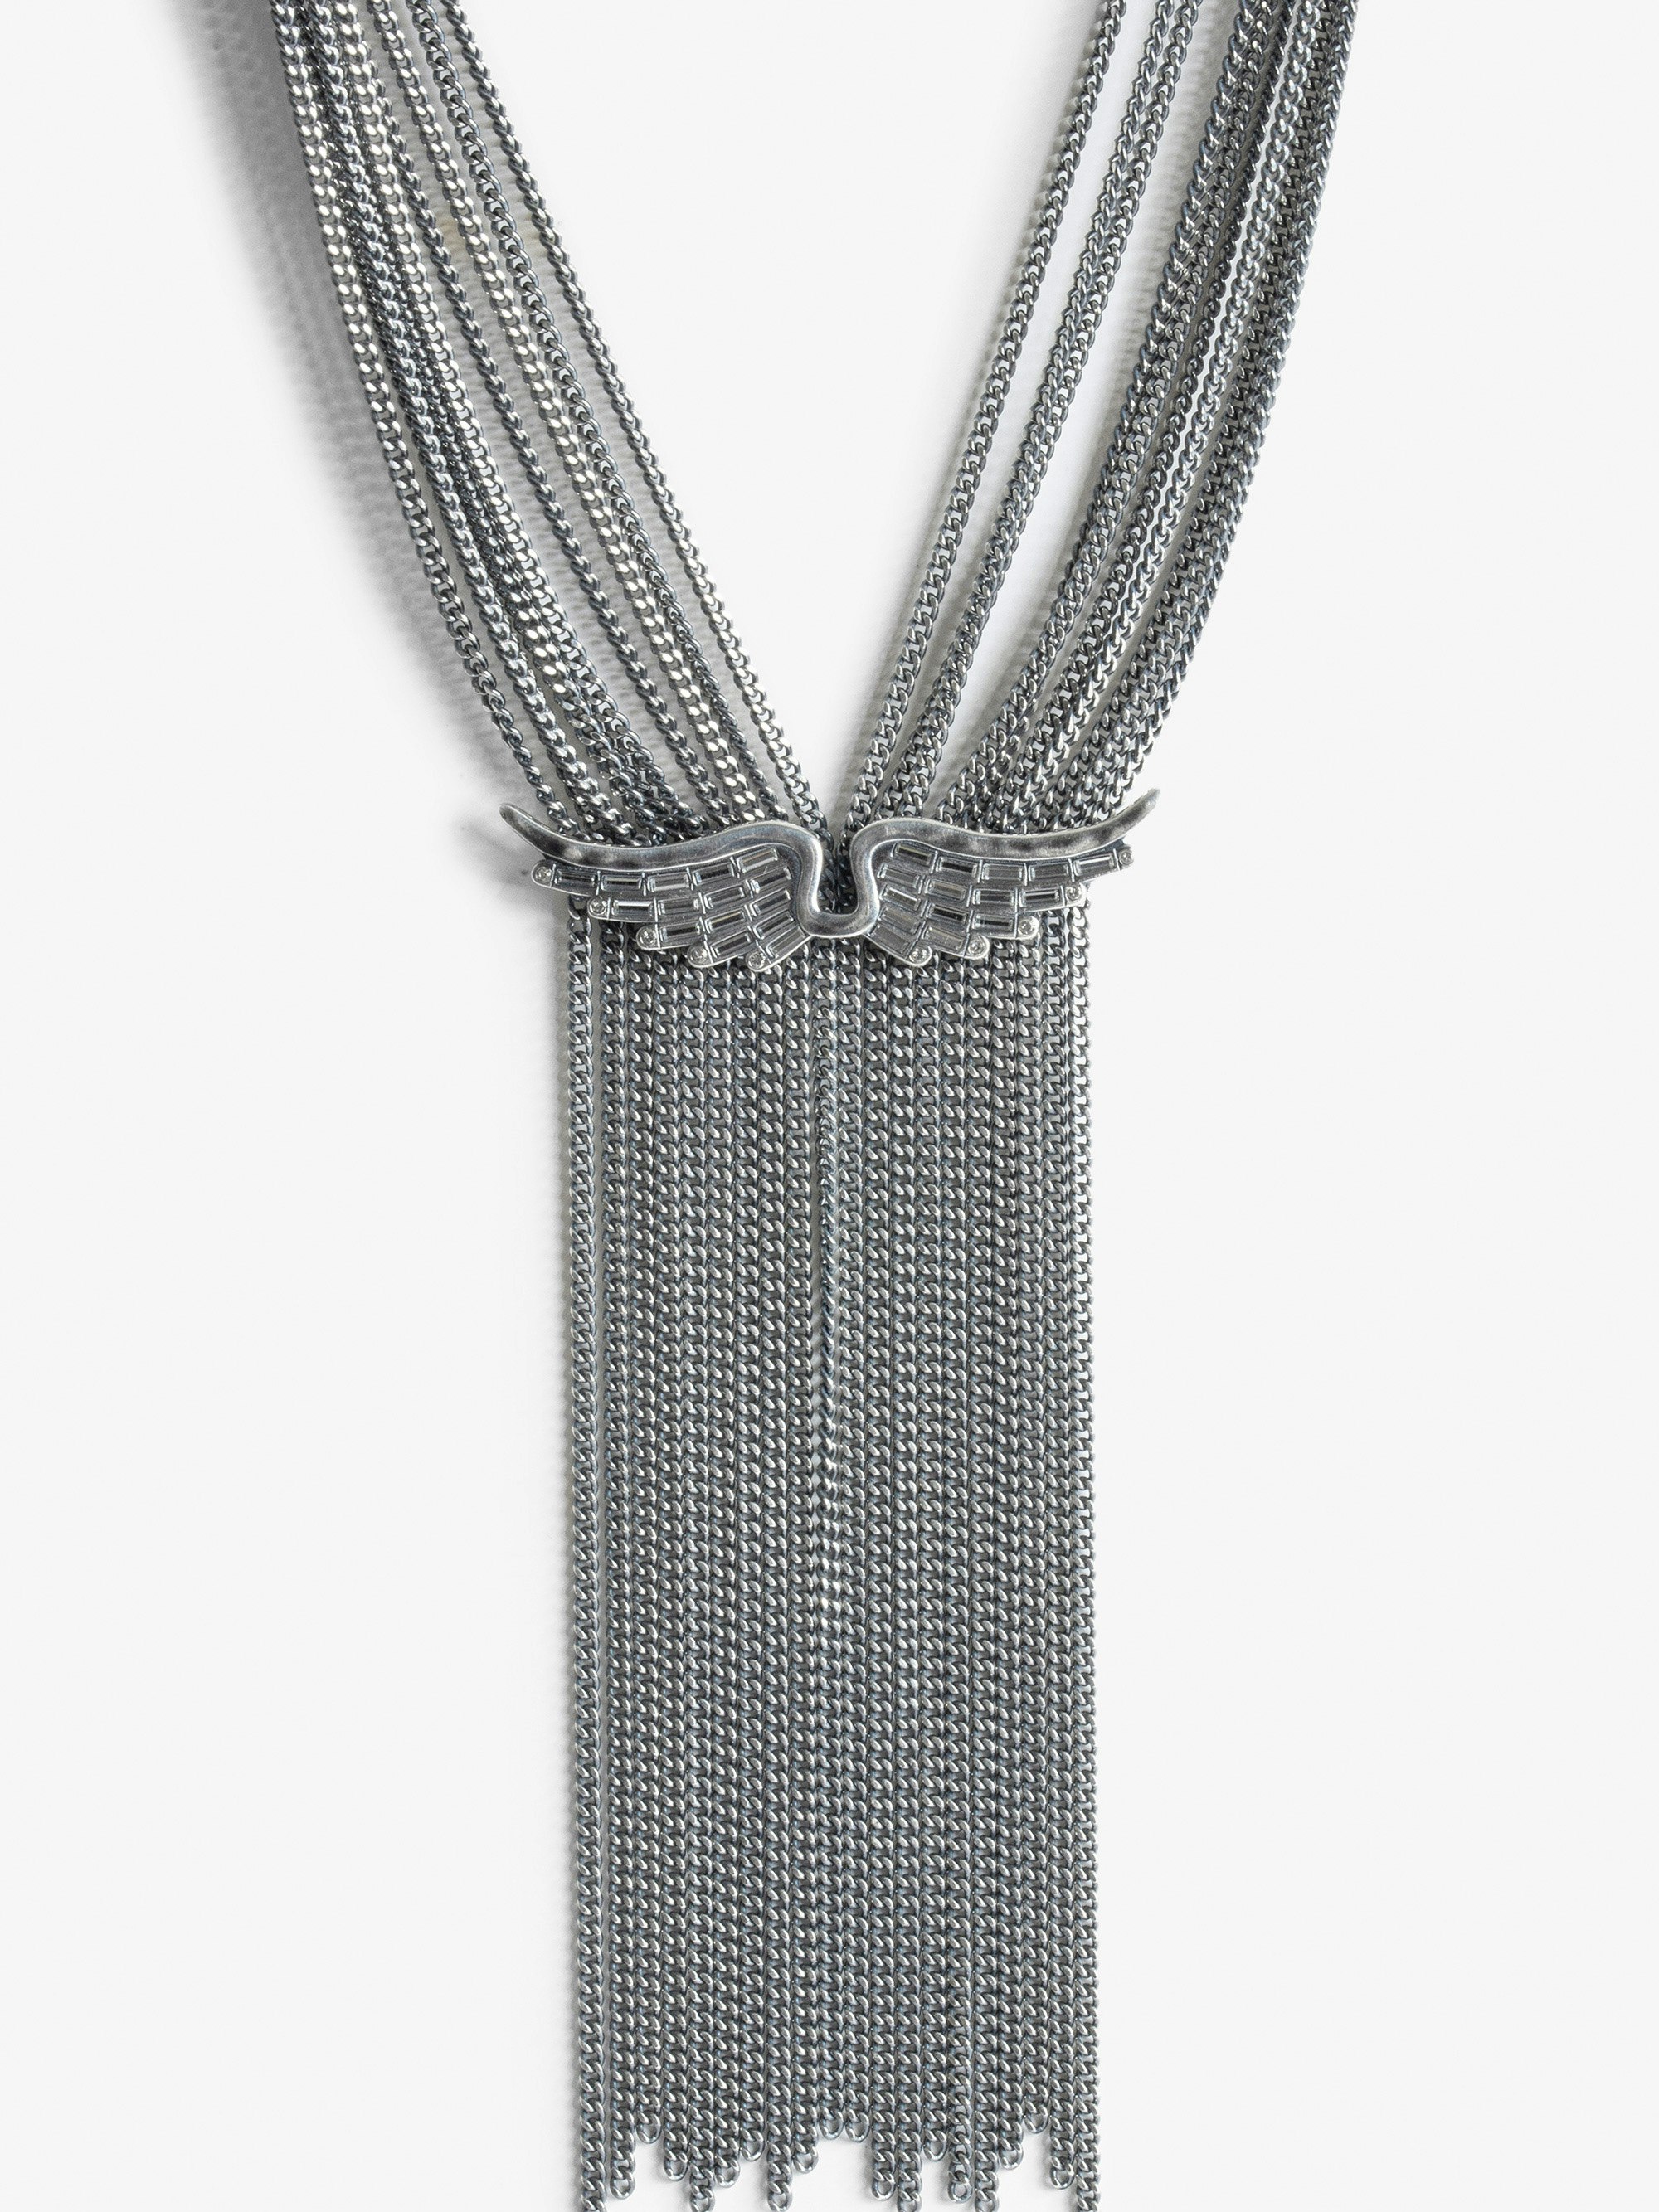 Halskette Rock Star - Halskette aus versilbertem Messing mit Flügel-Charm.